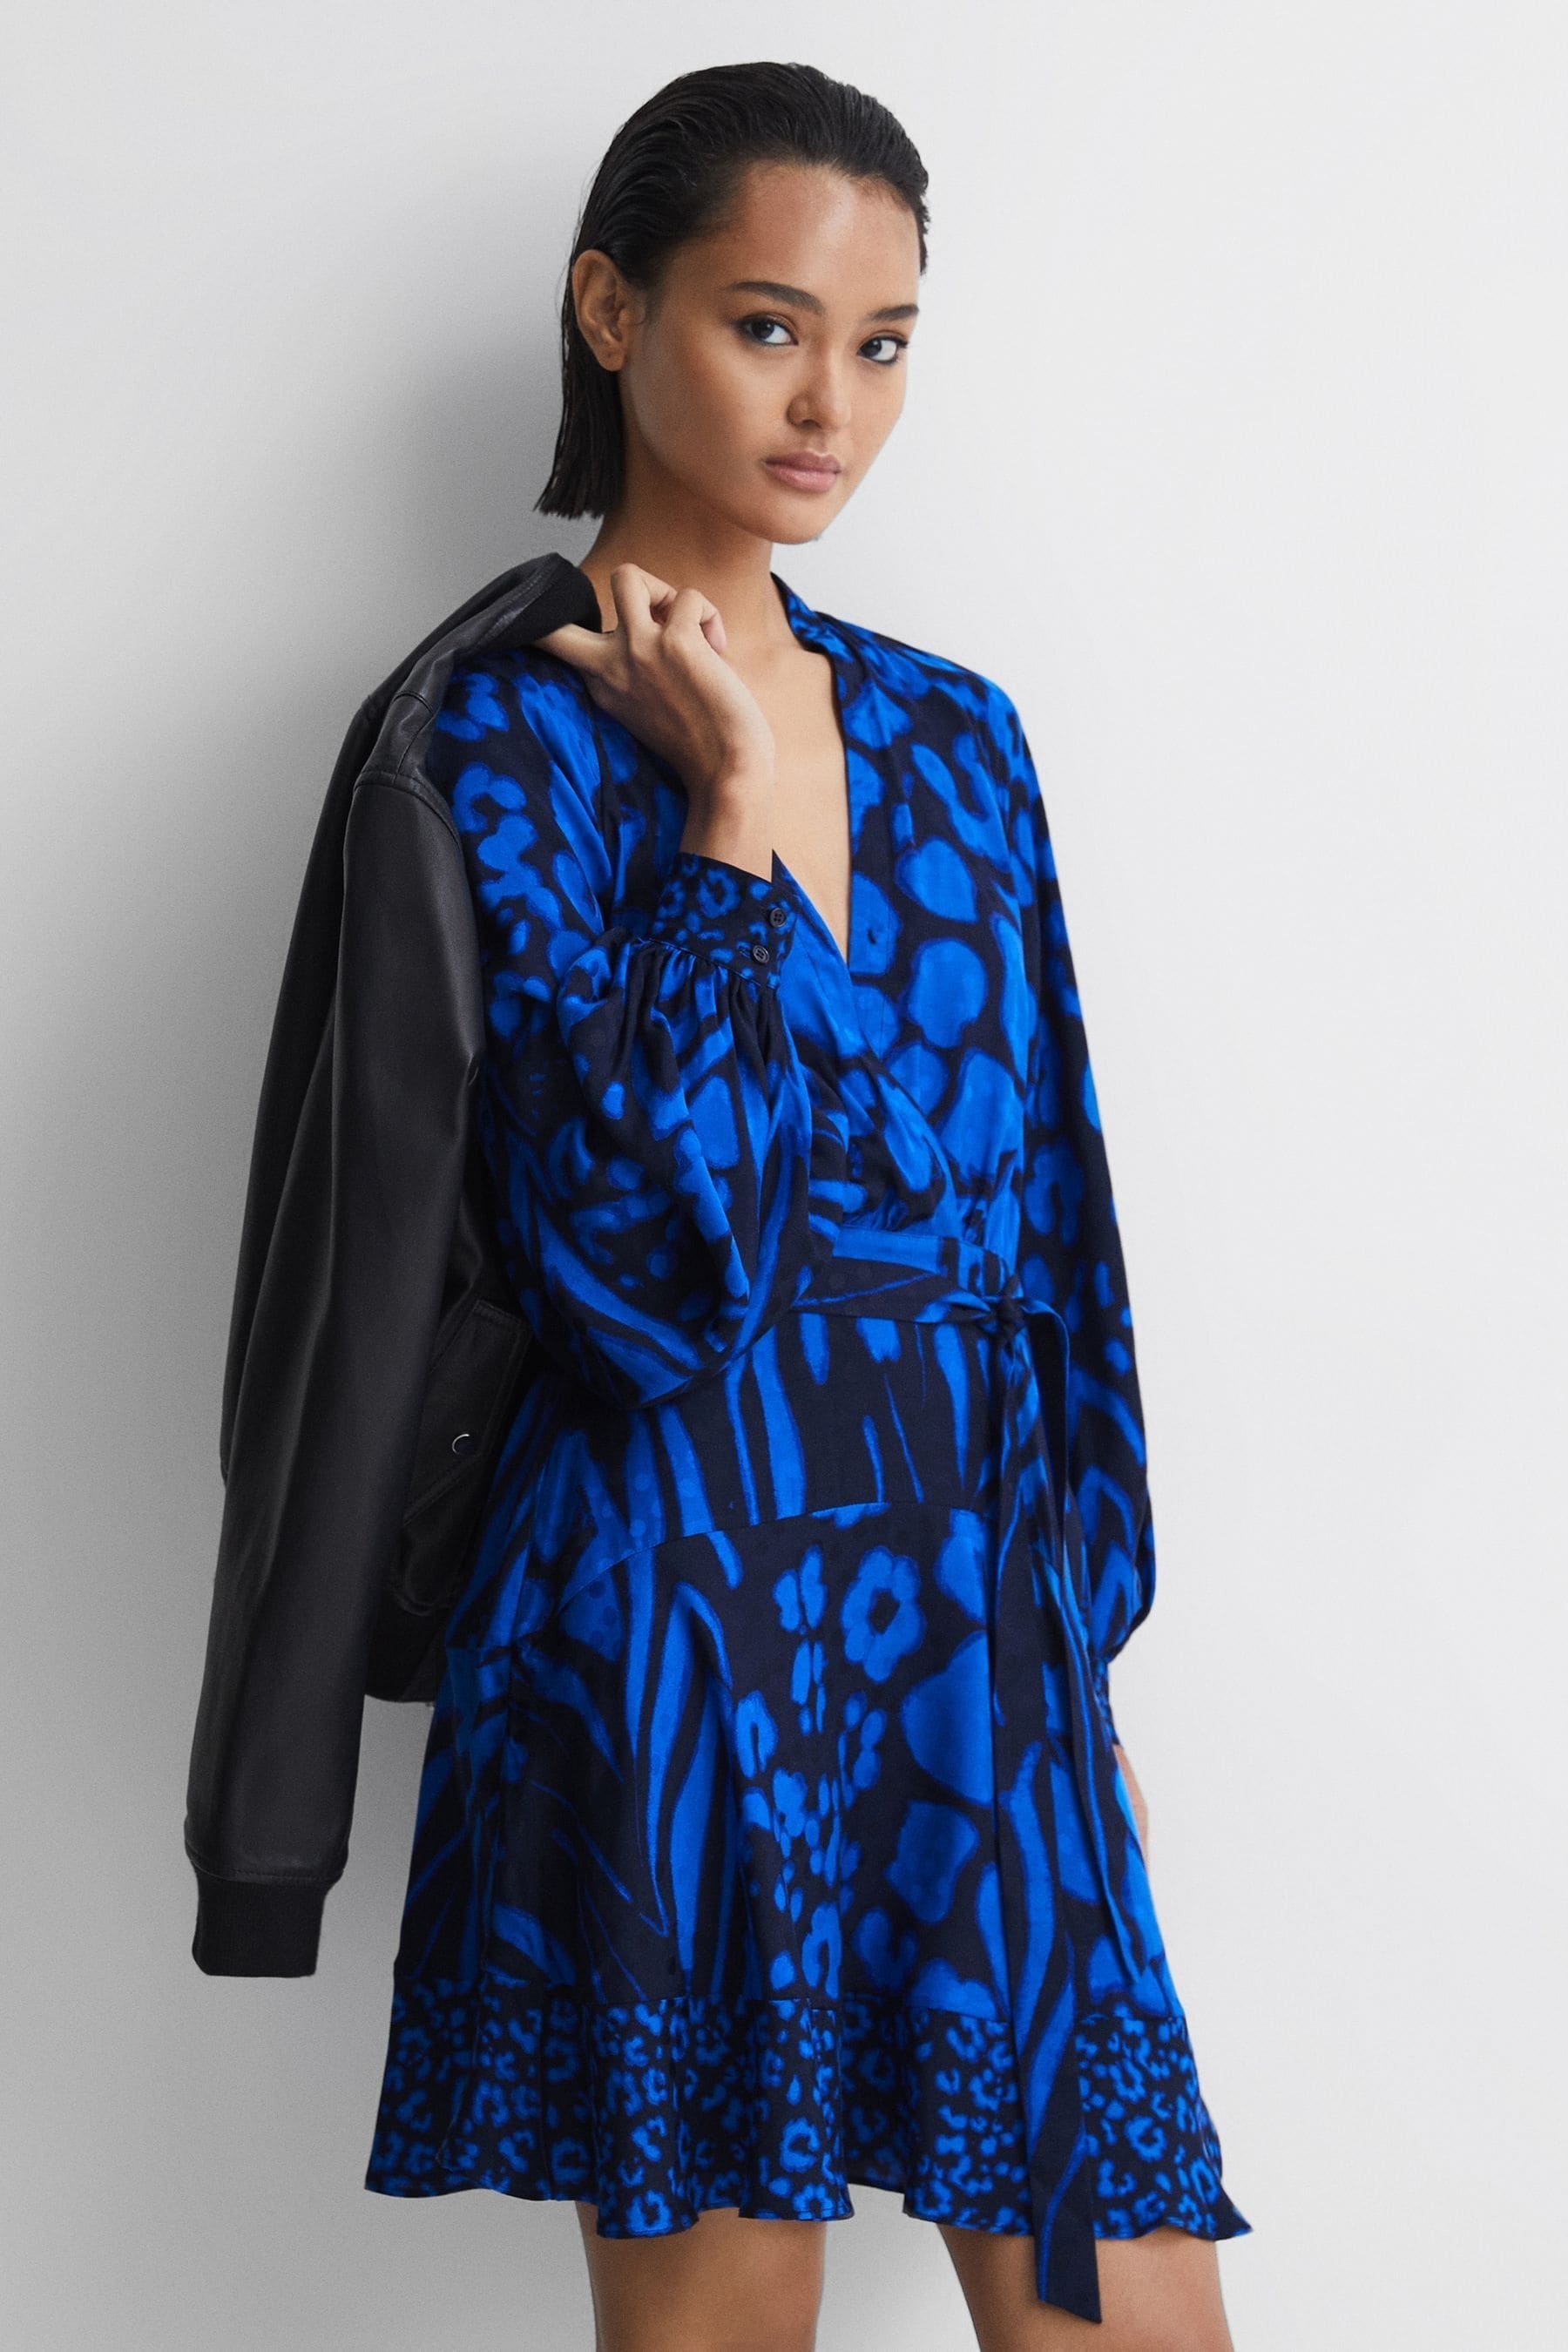 Reiss Kerri - Blue/navy Printed Blouson Sleeve Dress, Us 6